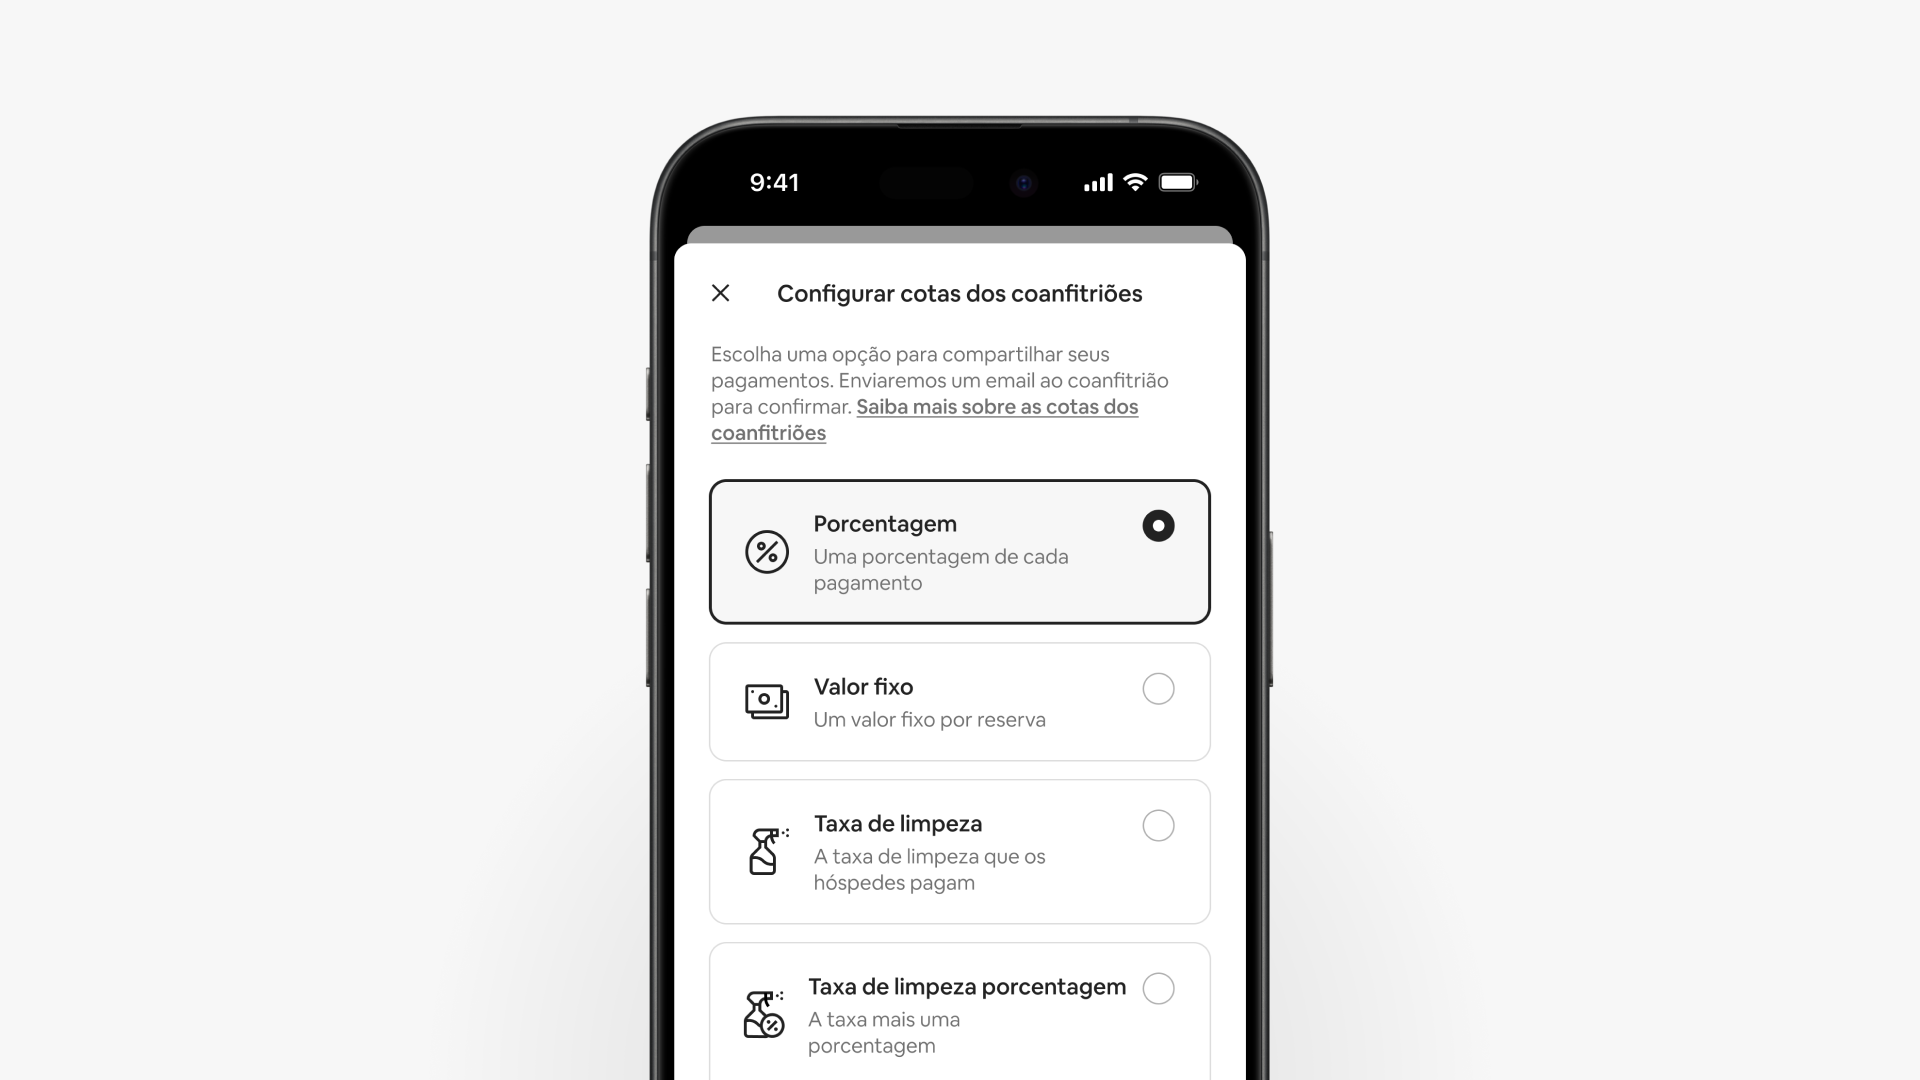 A tela de um smartphone mostra a página de pagamentos do coanfitrião, com quatro opções para compartilhamento de cotas.